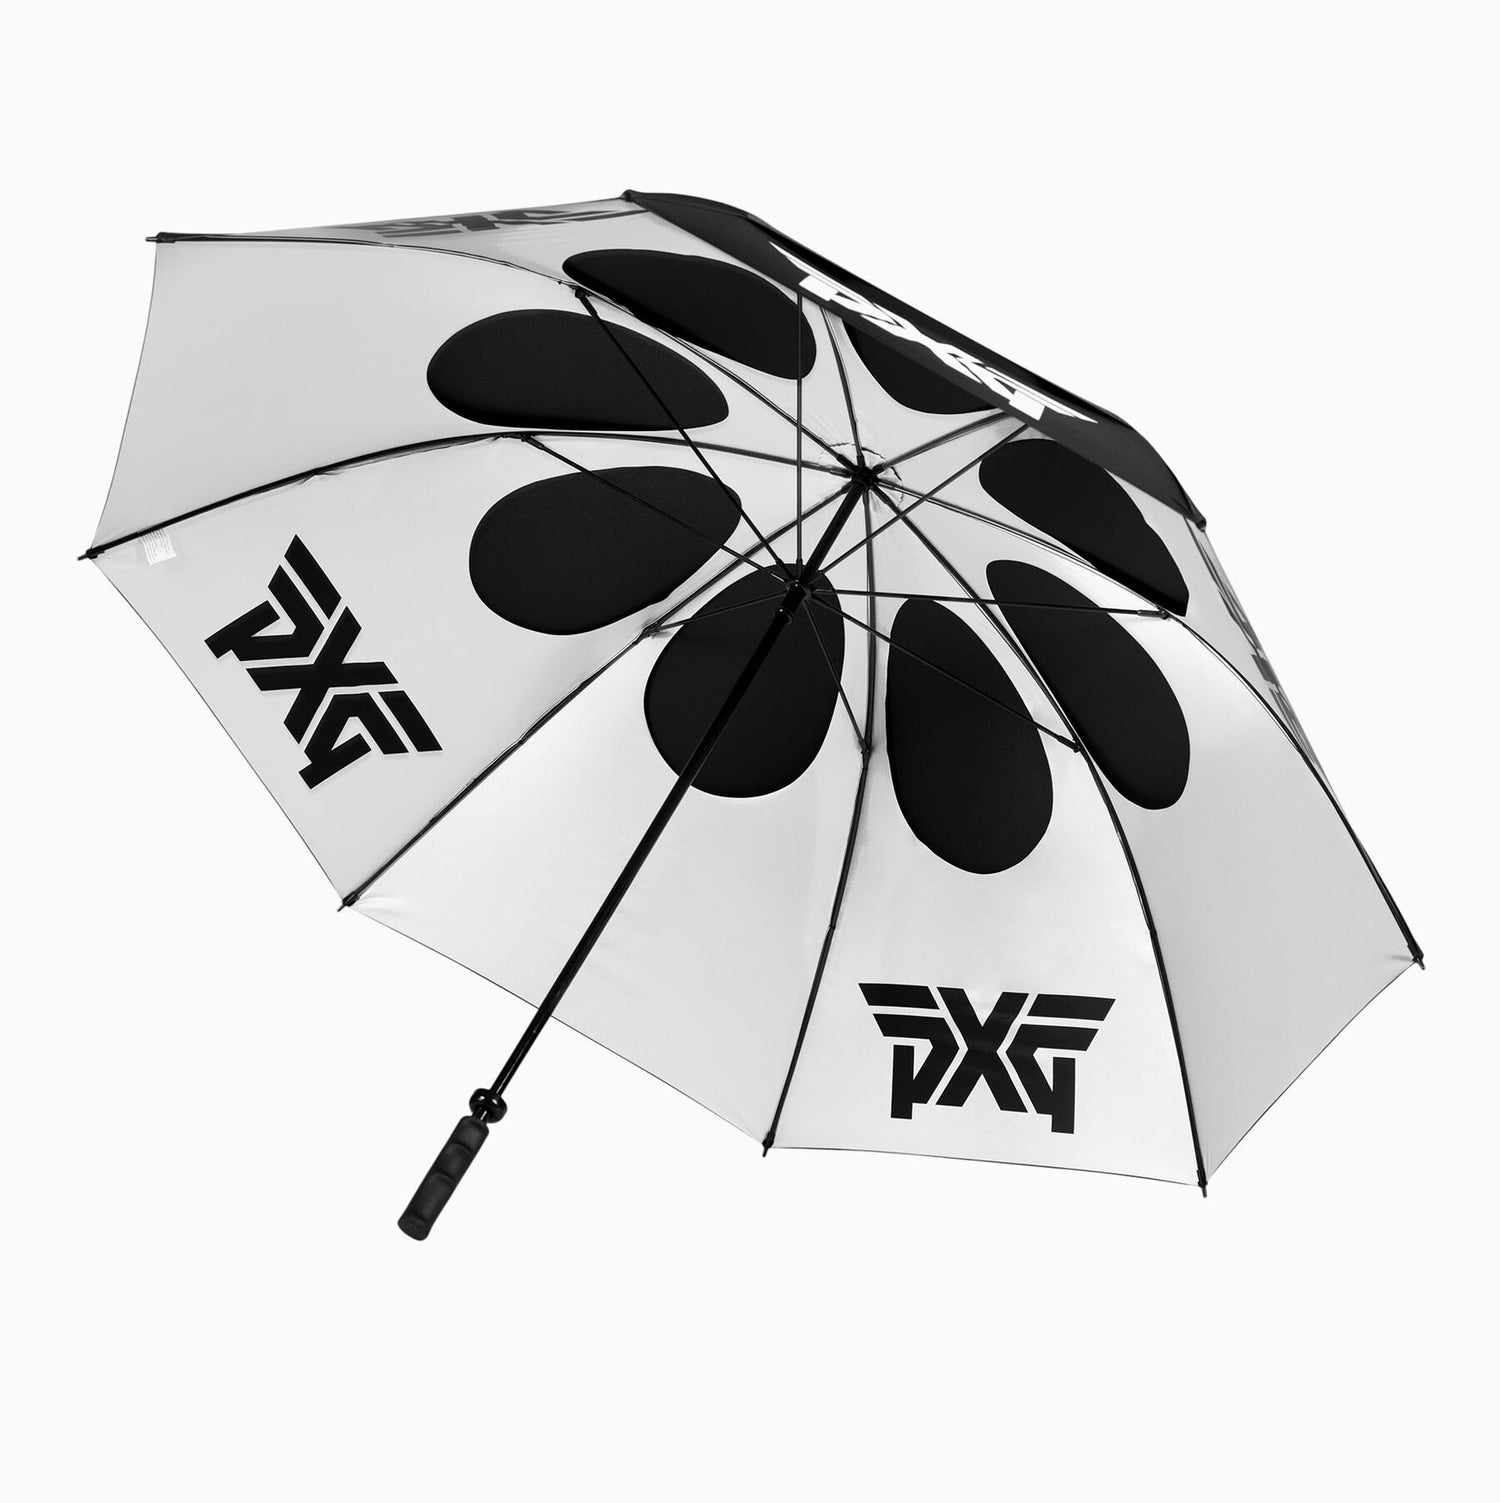 PXG Golf Fairway Camo Double Canopy Umbrella   